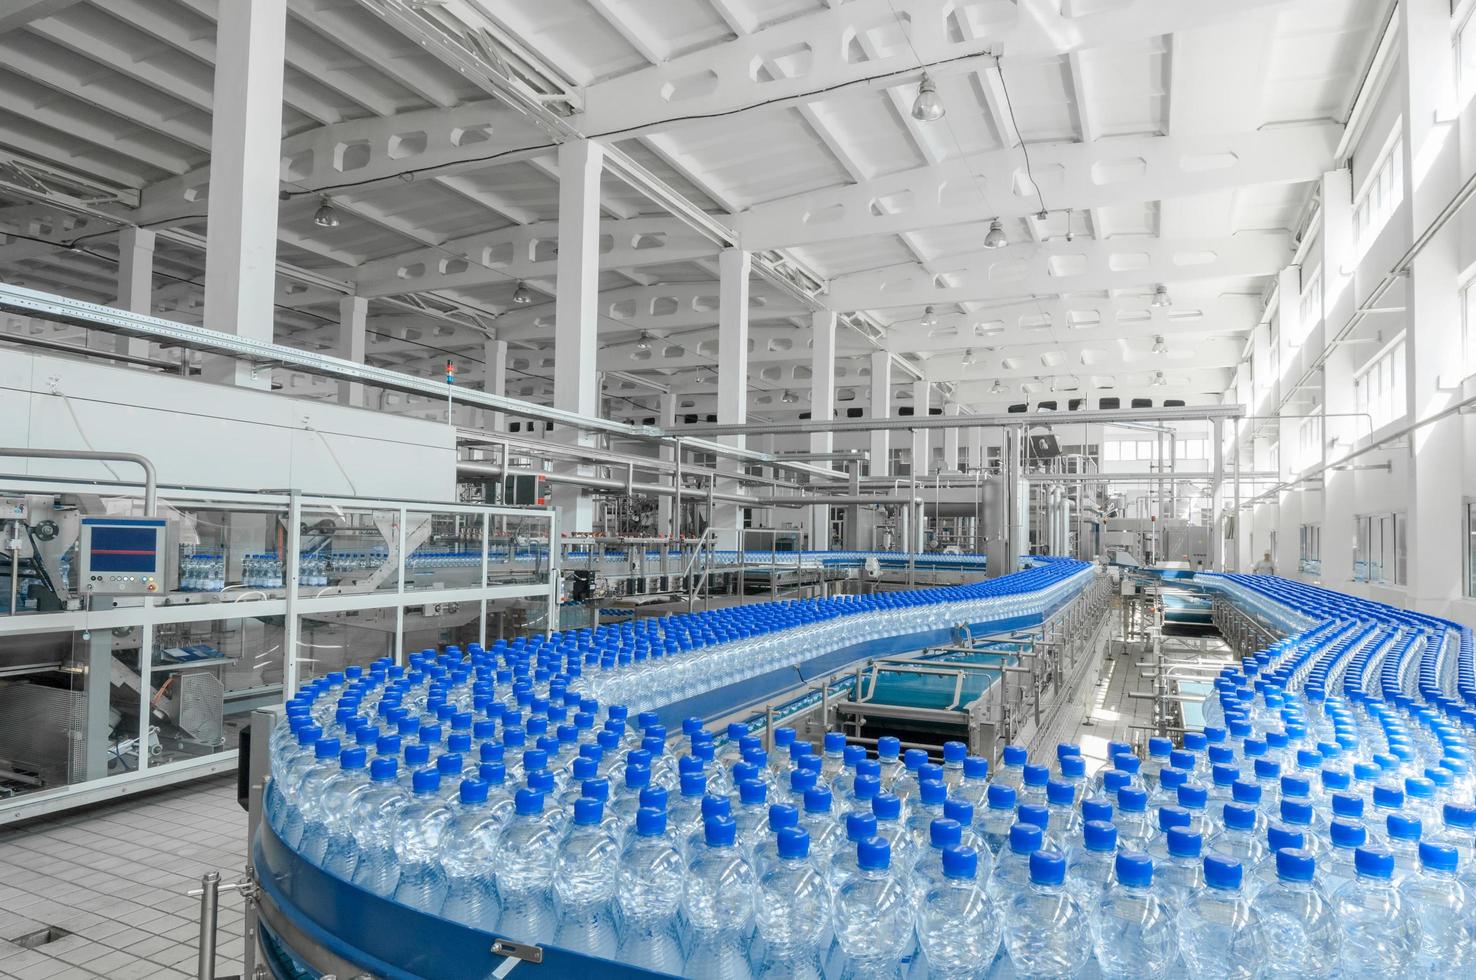 tashkent, uzbekistan - 7 juni 2016 - anläggning för tillverkning av plastflaskor. plastflaskor på ett löpande band. påfyllning av vatten på flaska foto